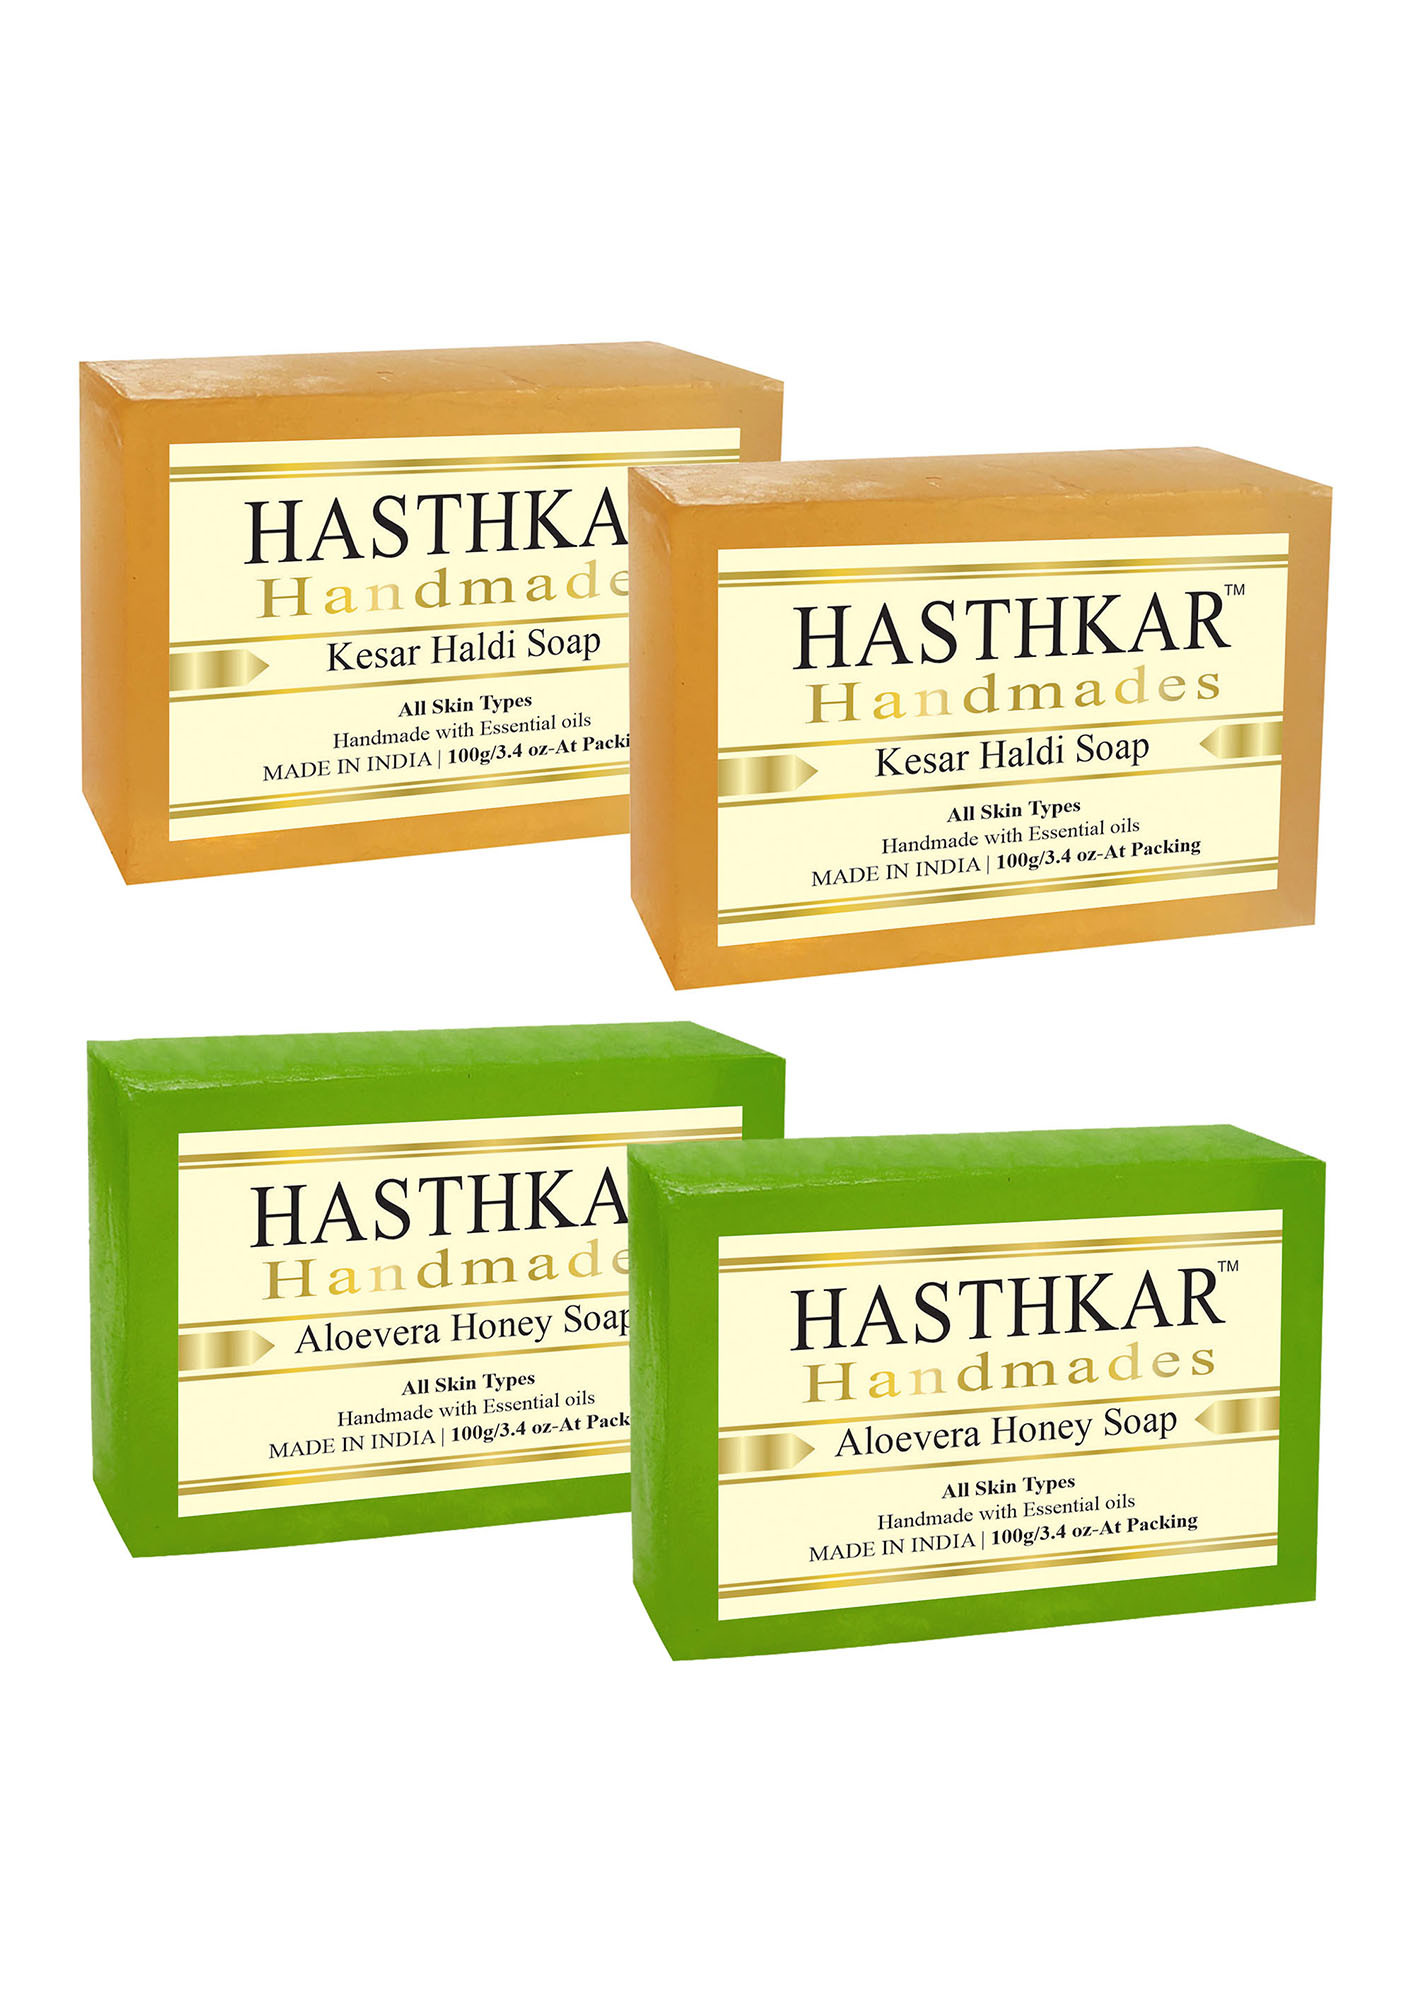 Hasthkar Handmades Aloevera Honey Soap and Kesar Haldi Handmade Natural Soap (2x2 Gift Combo)